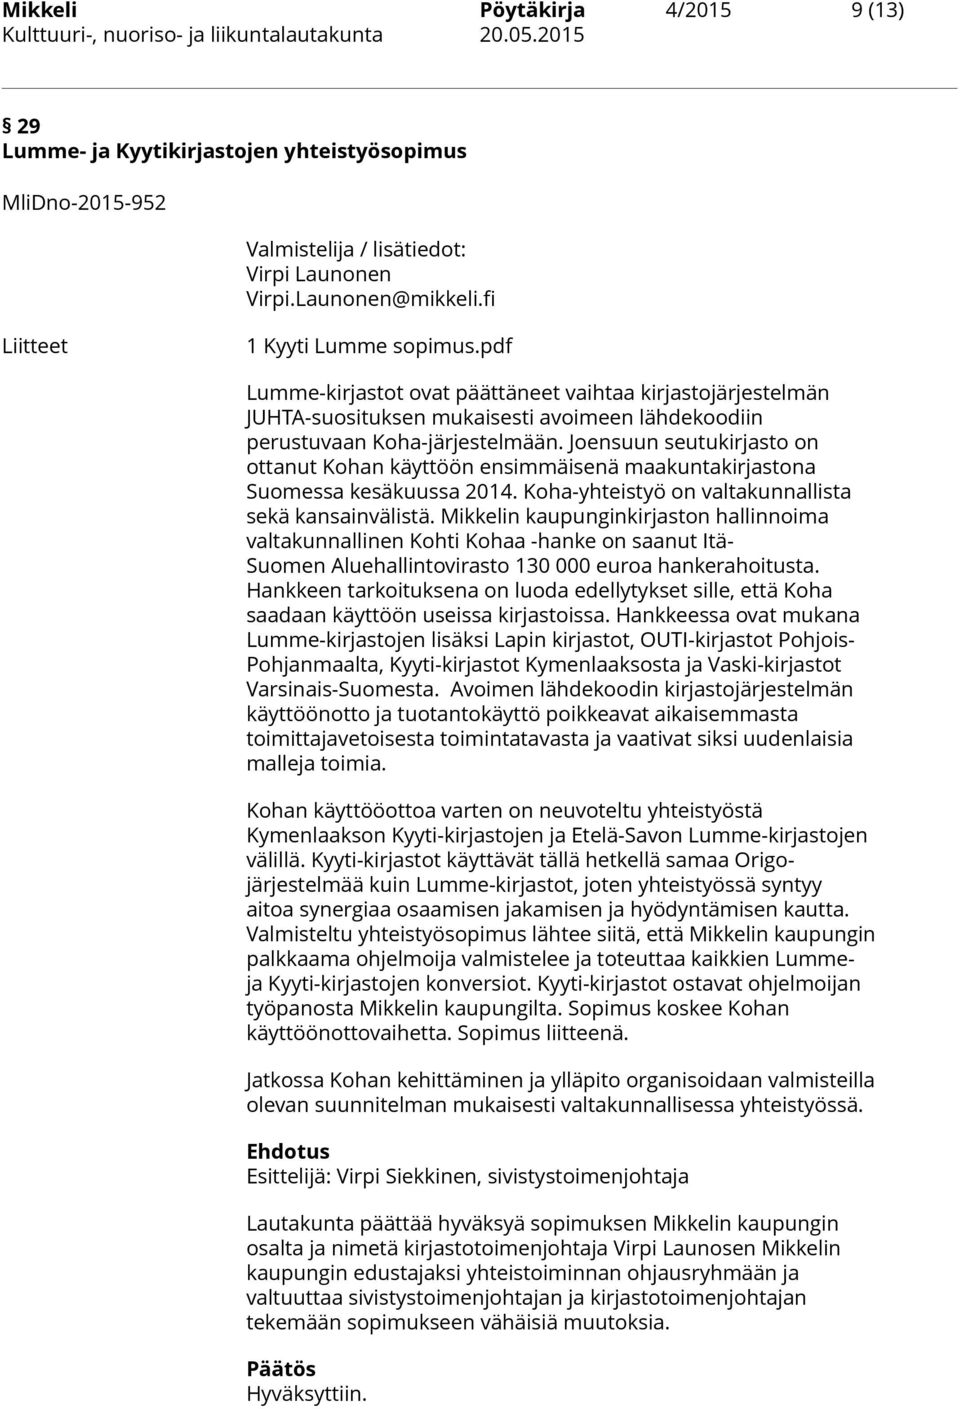 Joensuun seutukirjasto on ottanut Kohan käyttöön ensimmäisenä maakuntakirjastona Suomessa kesäkuussa 2014. Koha-yhteistyö on valtakunnallista sekä kansainvälistä.